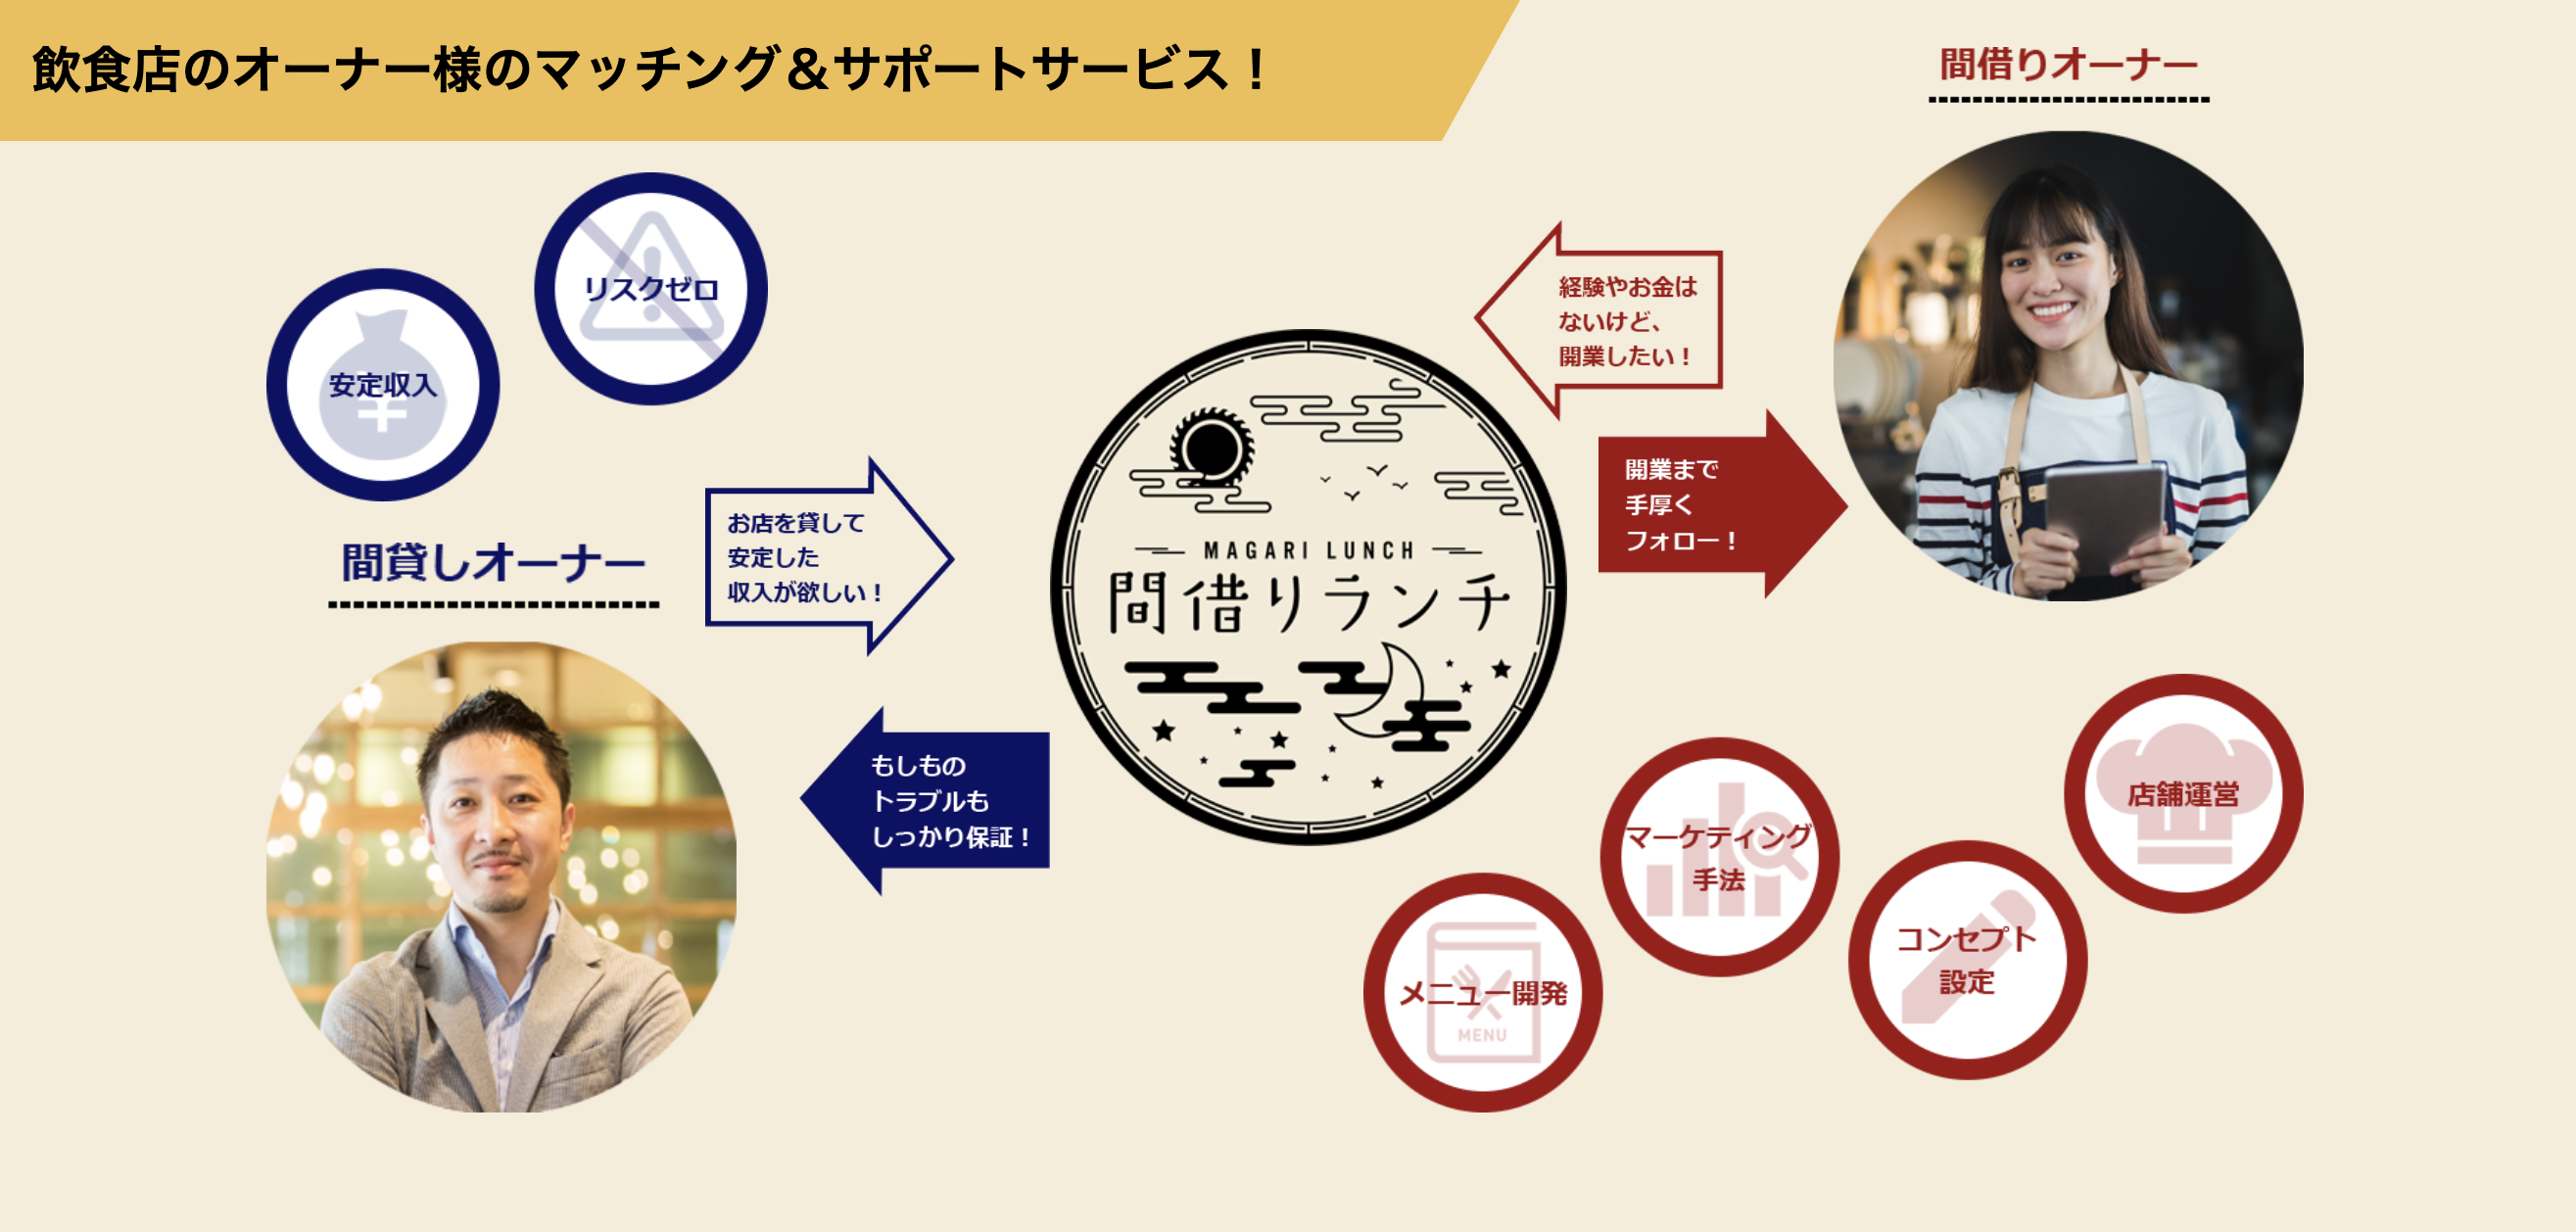 「一蘭ラーメンちぢれ麺 福岡限定」がリニューアル！福岡のおみやげにピッタリなデザインになりました！